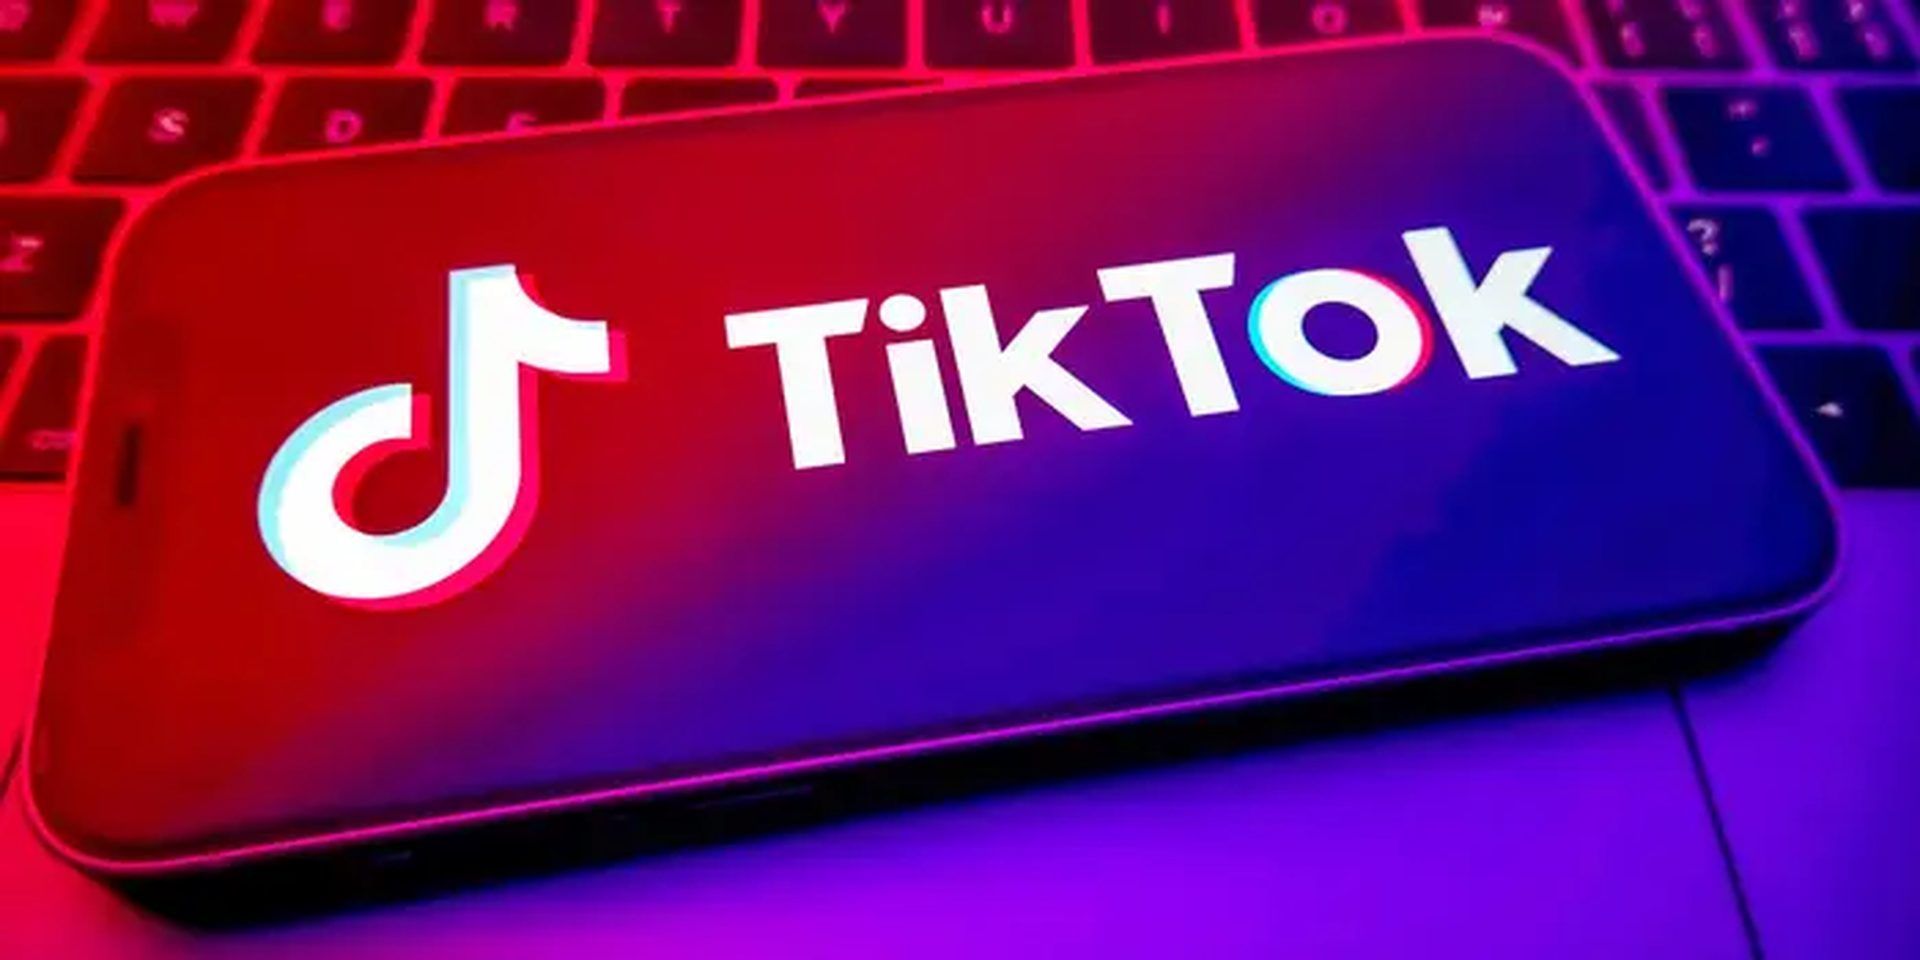 How to turn off profile views on TikTok